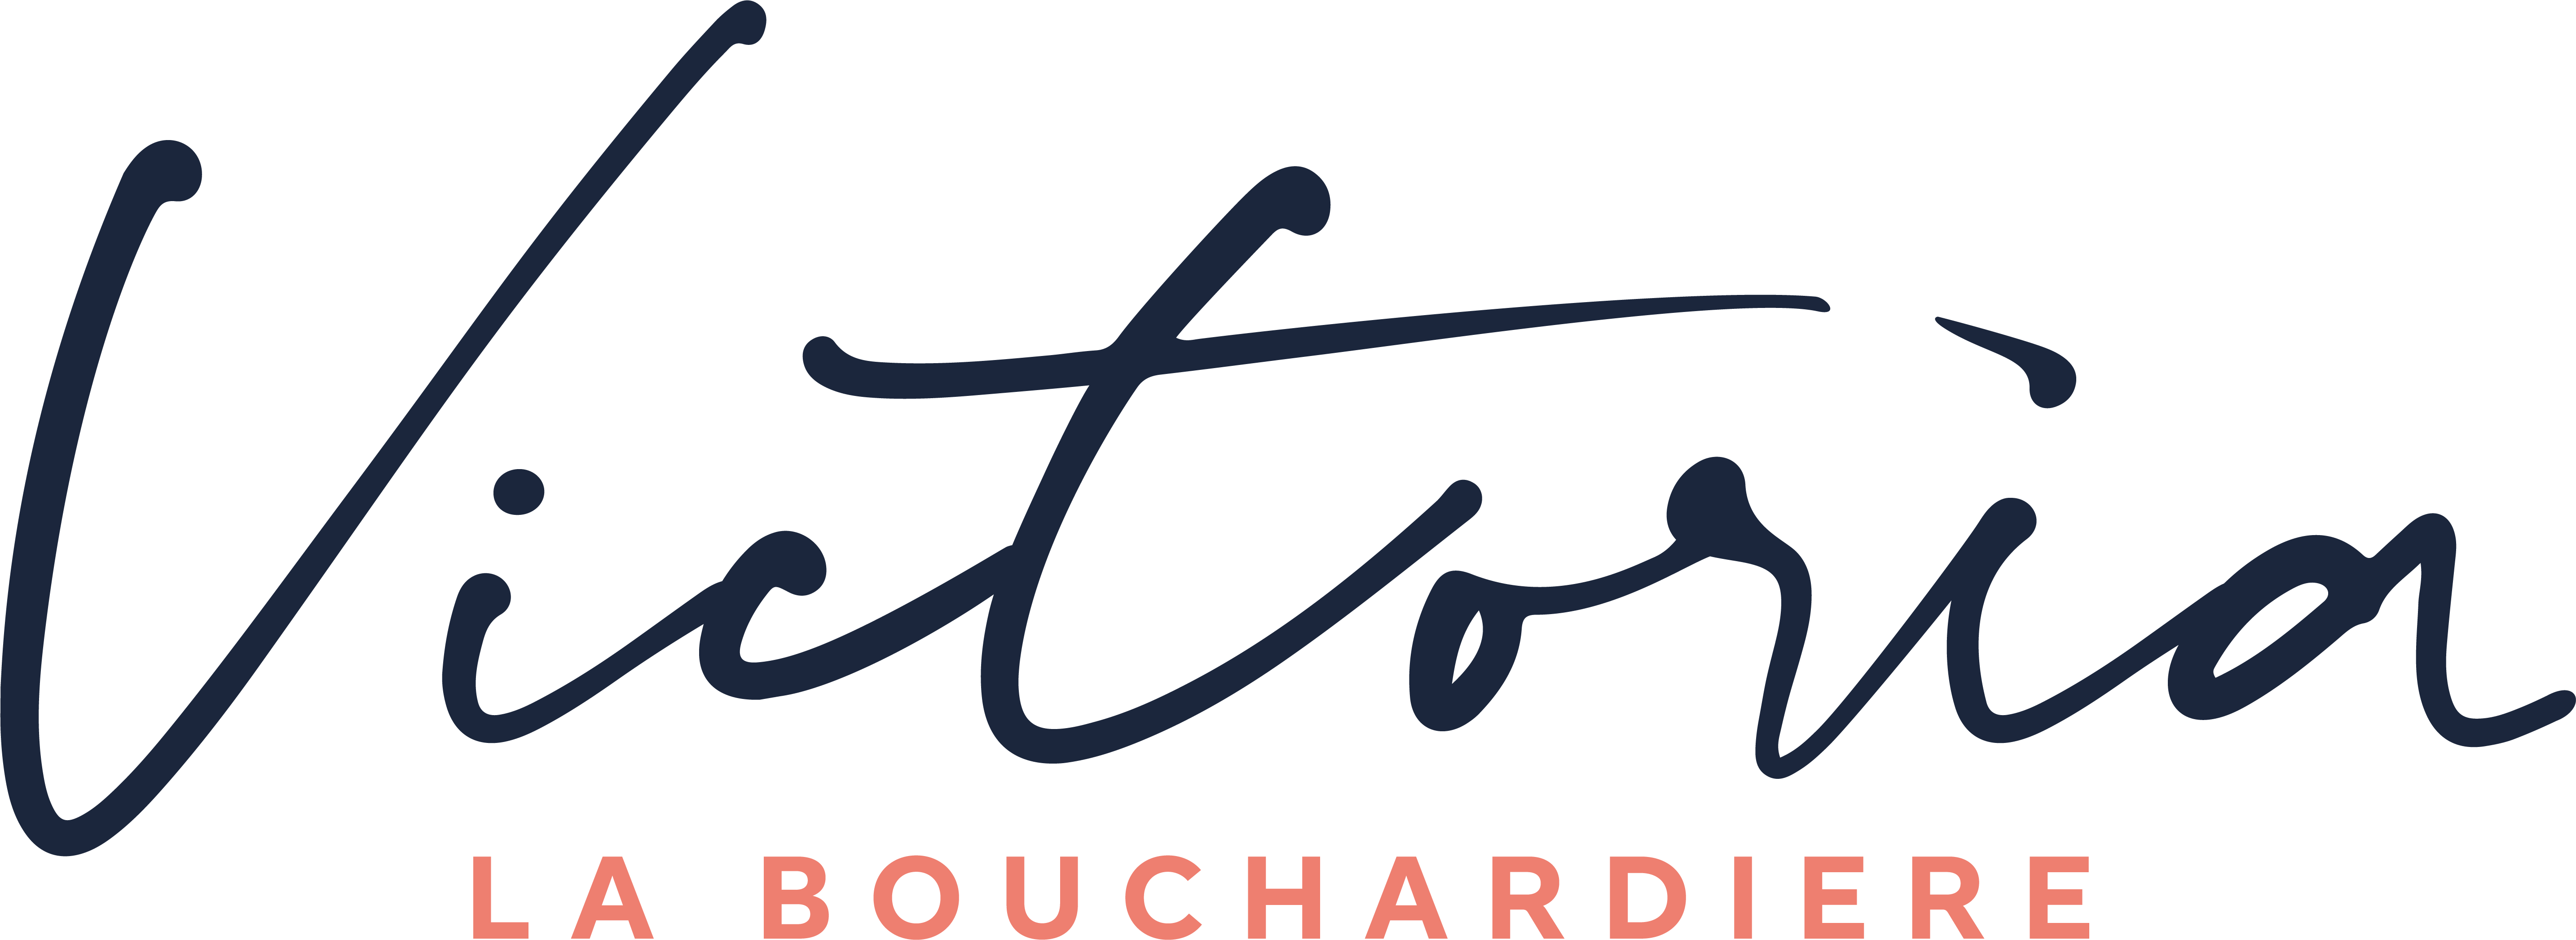 Victoria La Bouchardiere Logo